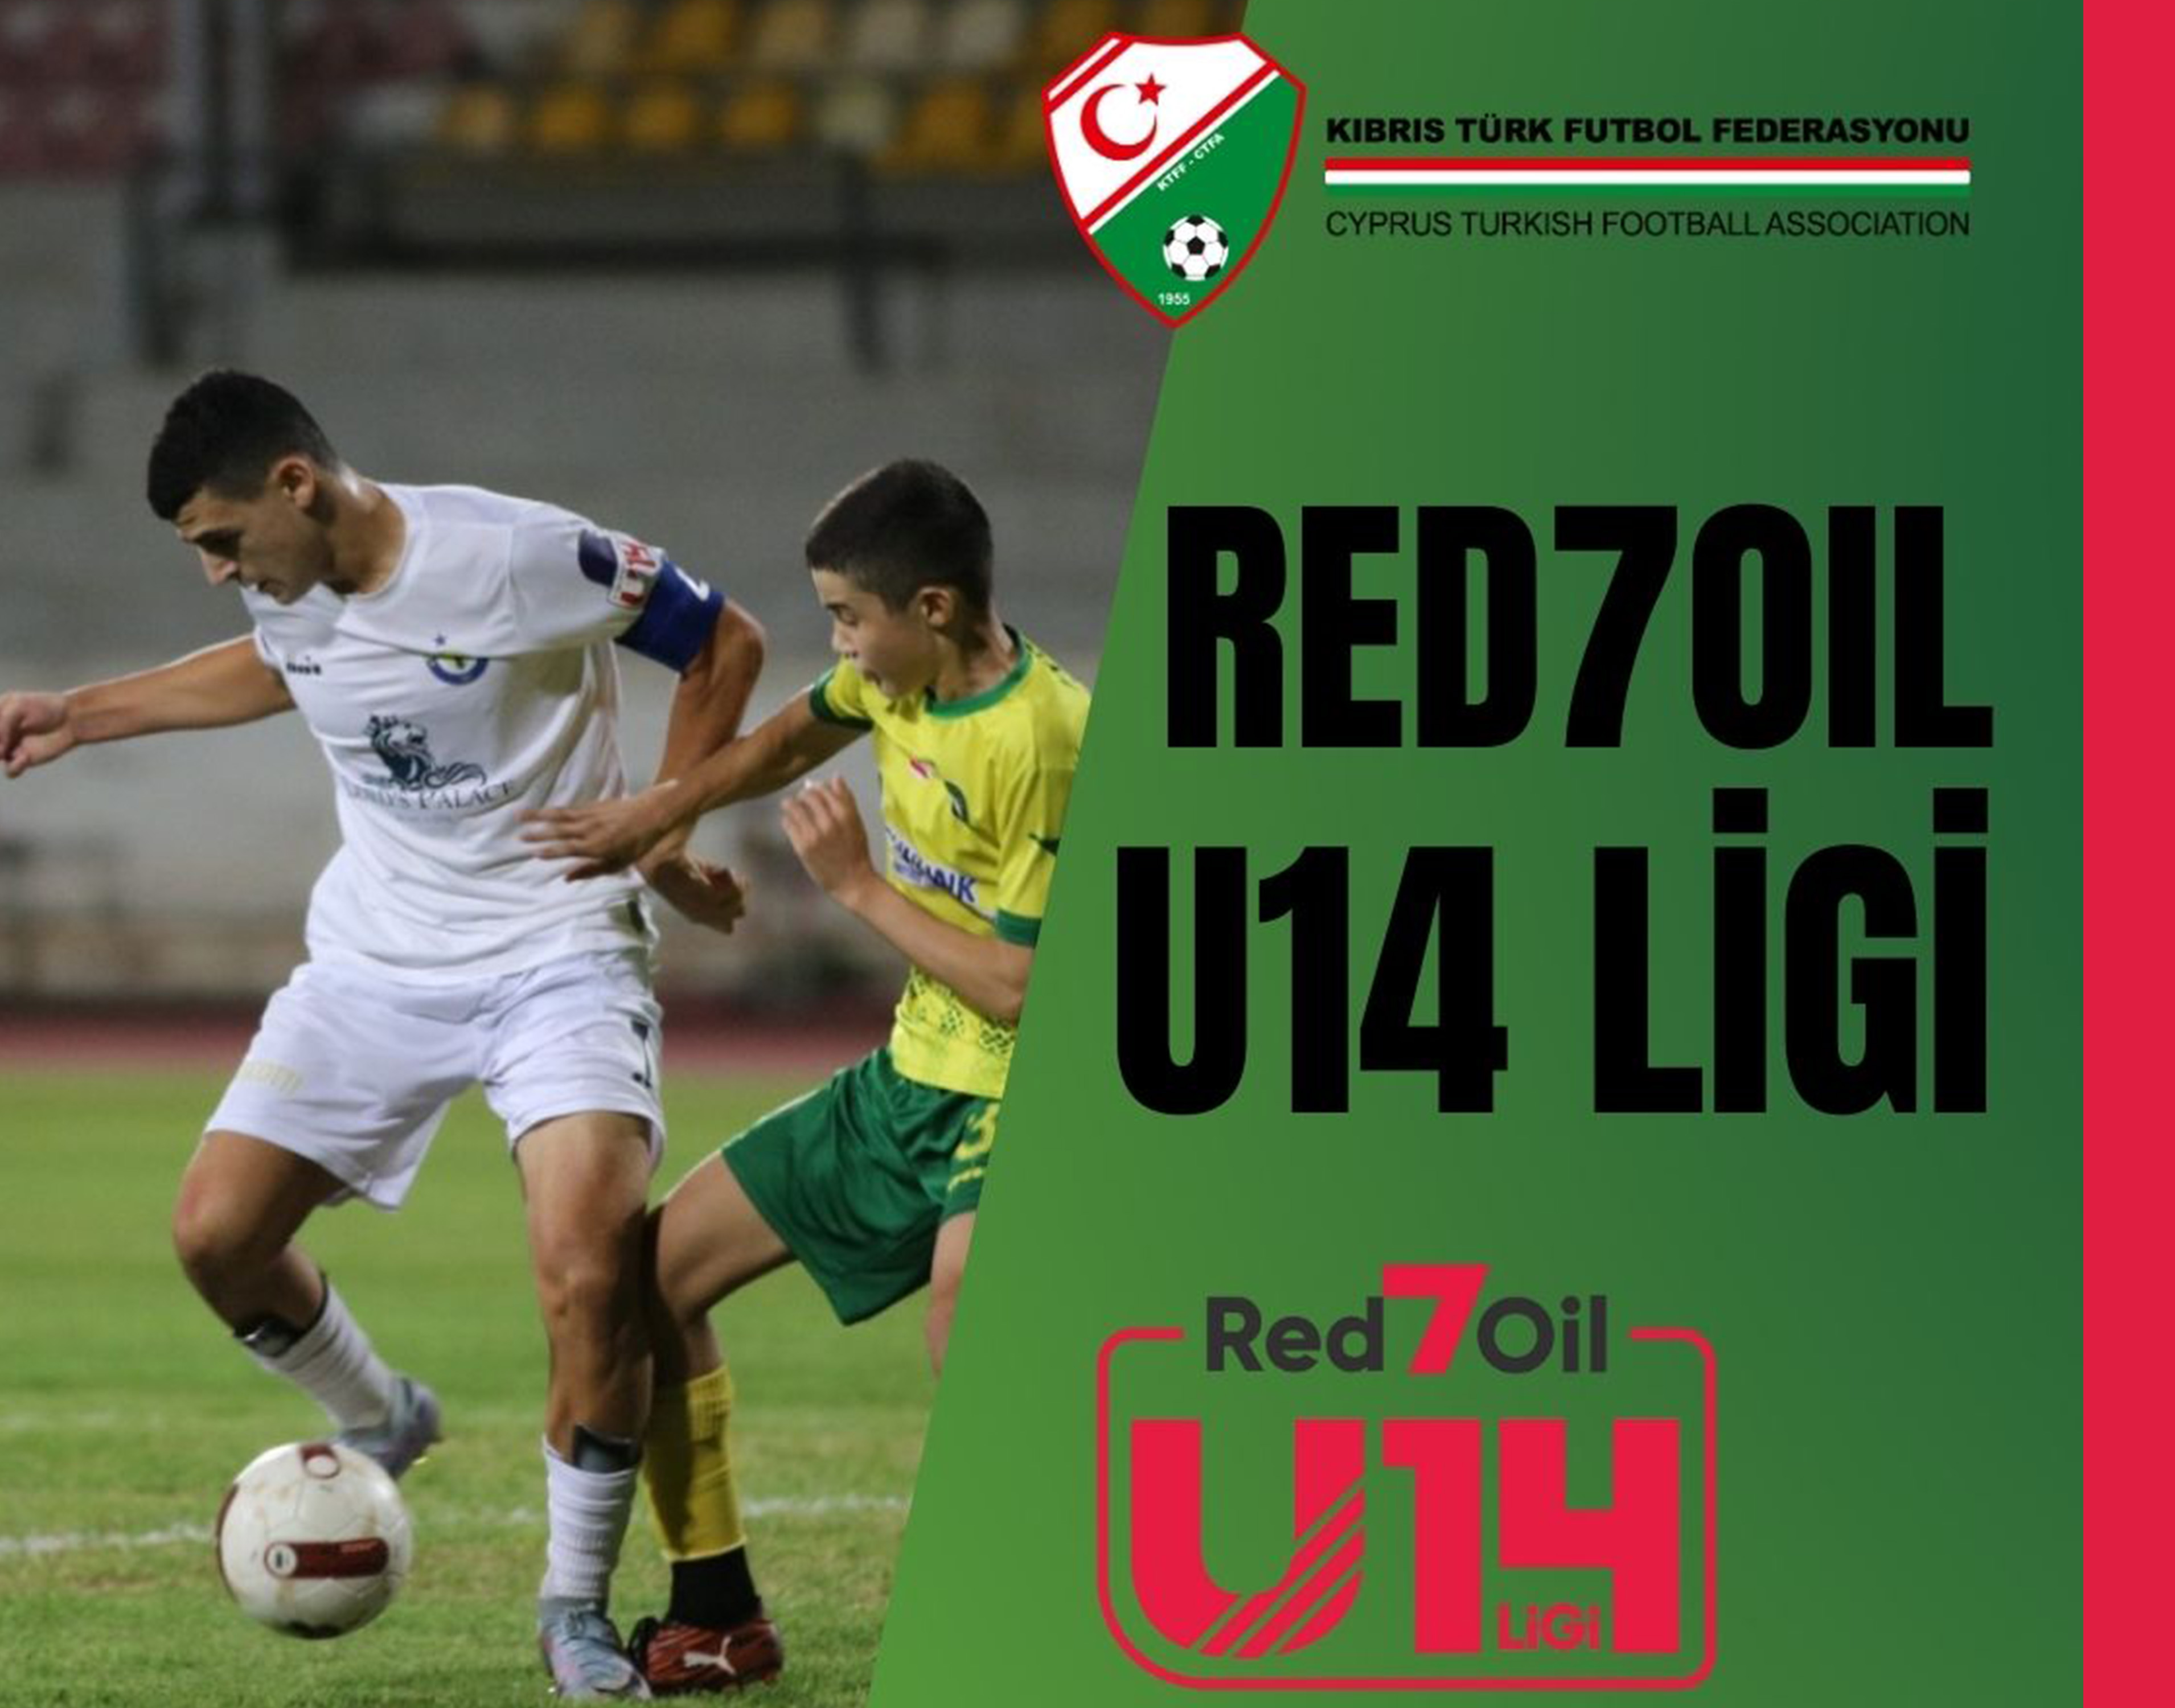 Red7Oil U14 Ligi'ne başvurular başladı